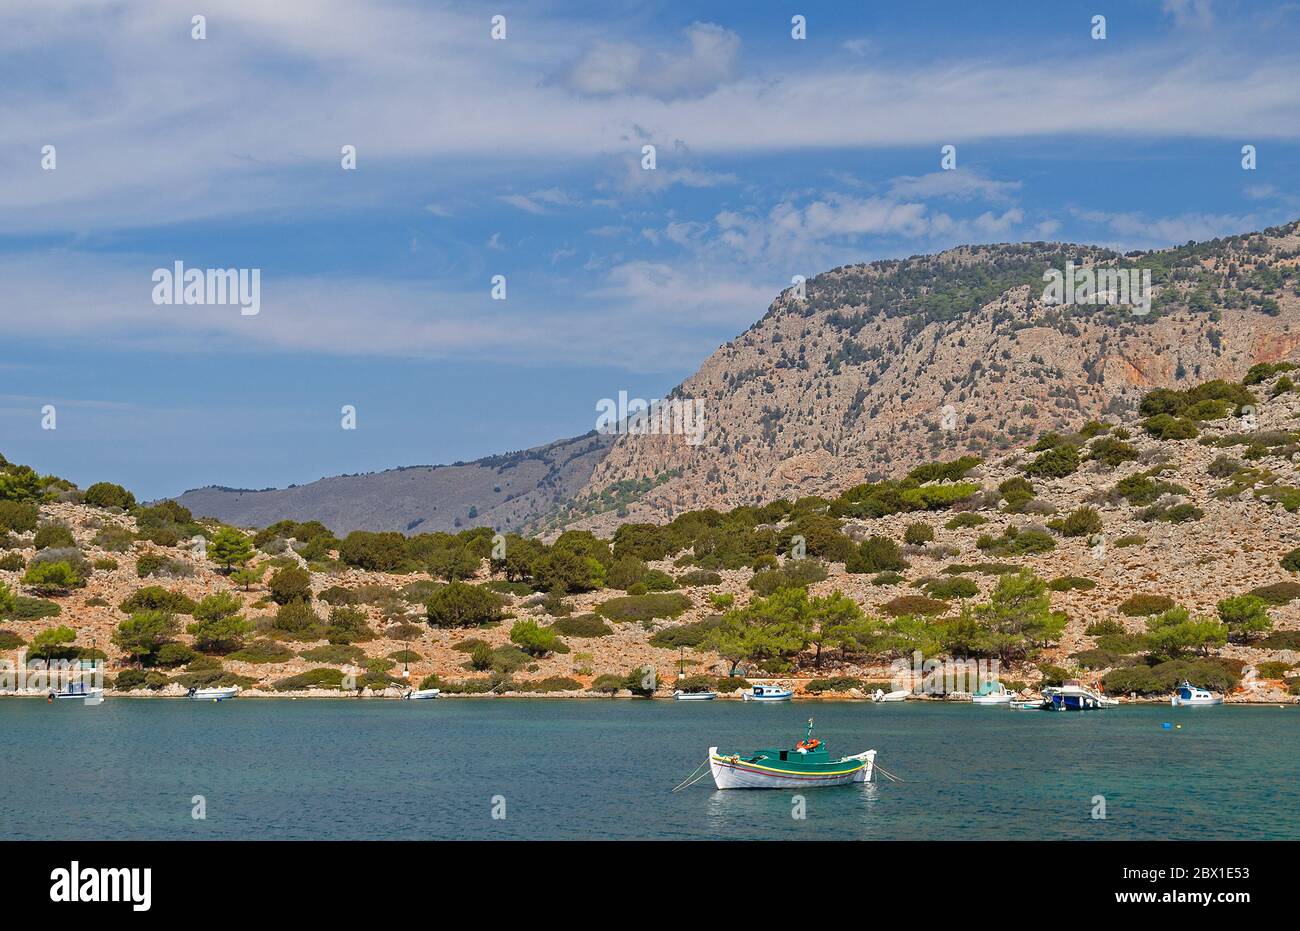 Barren yet beautiful landscape of Symi, a Greek island near Rhodes. Stock Photo